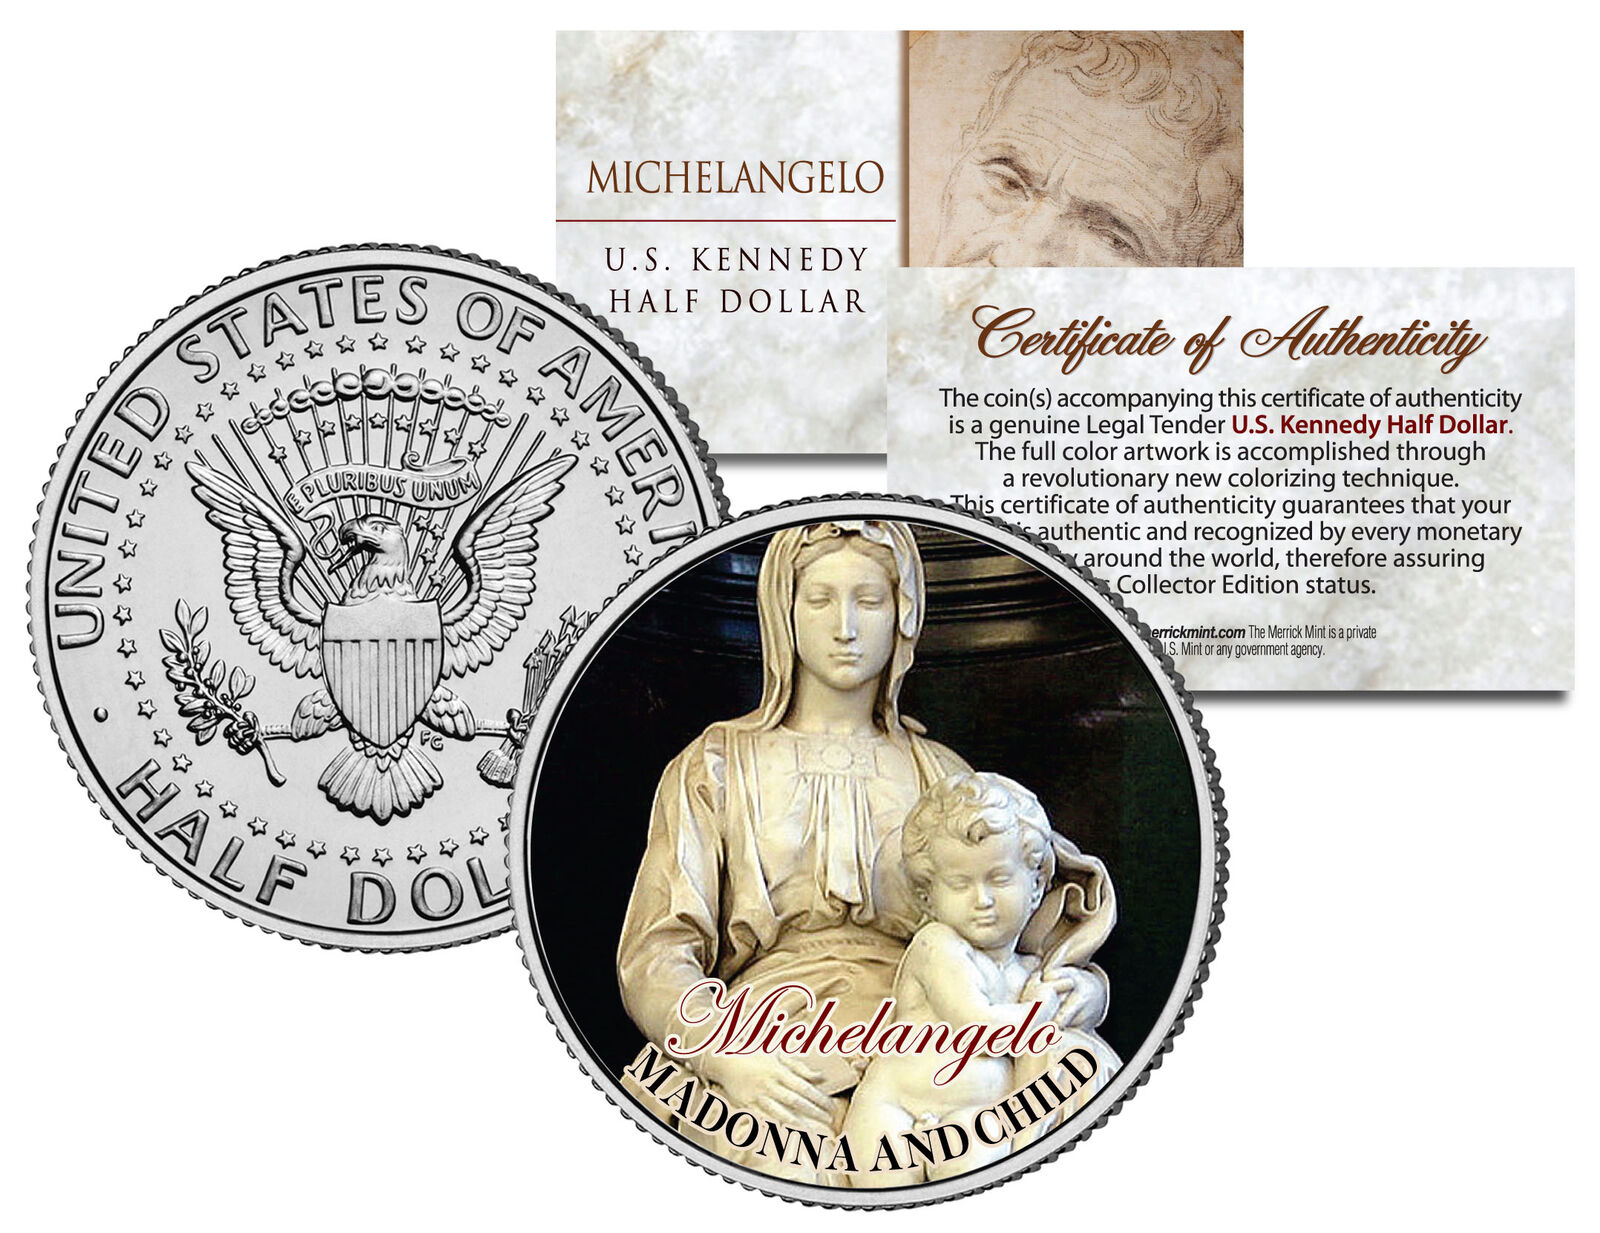 MICHELANGELO *MADONNA AND CHILD* Jesus Statue Sculpture JFK Half Dollar US Coin